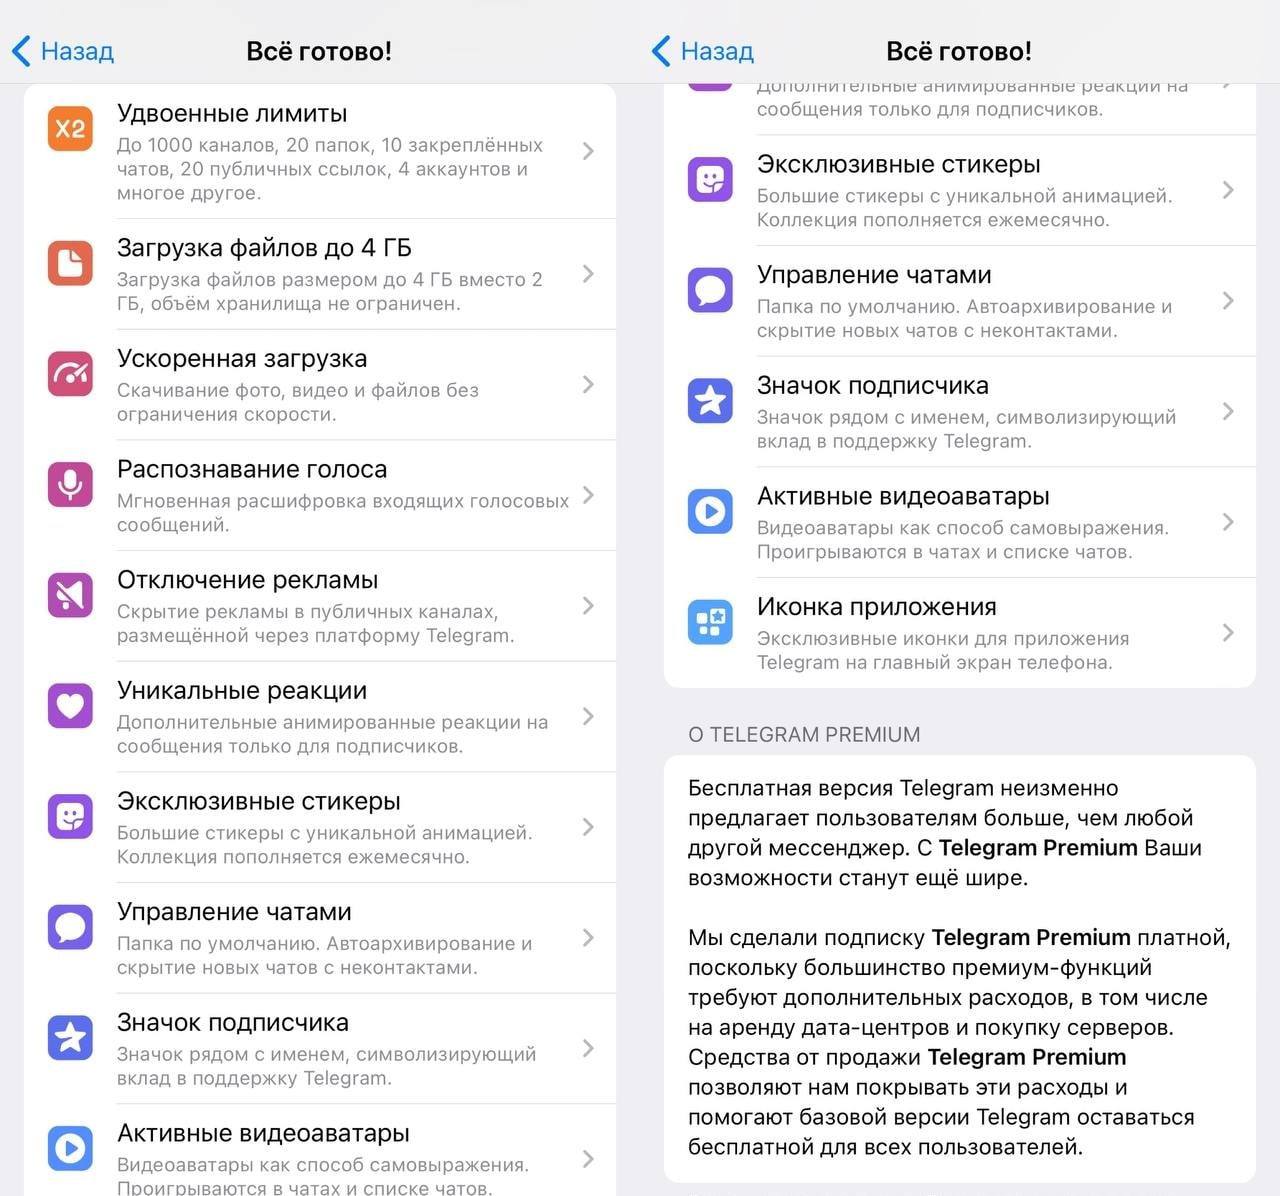 Телеграмм премиум скачать бесплатно андроид последняя версия без вирусов полную на русском фото 73